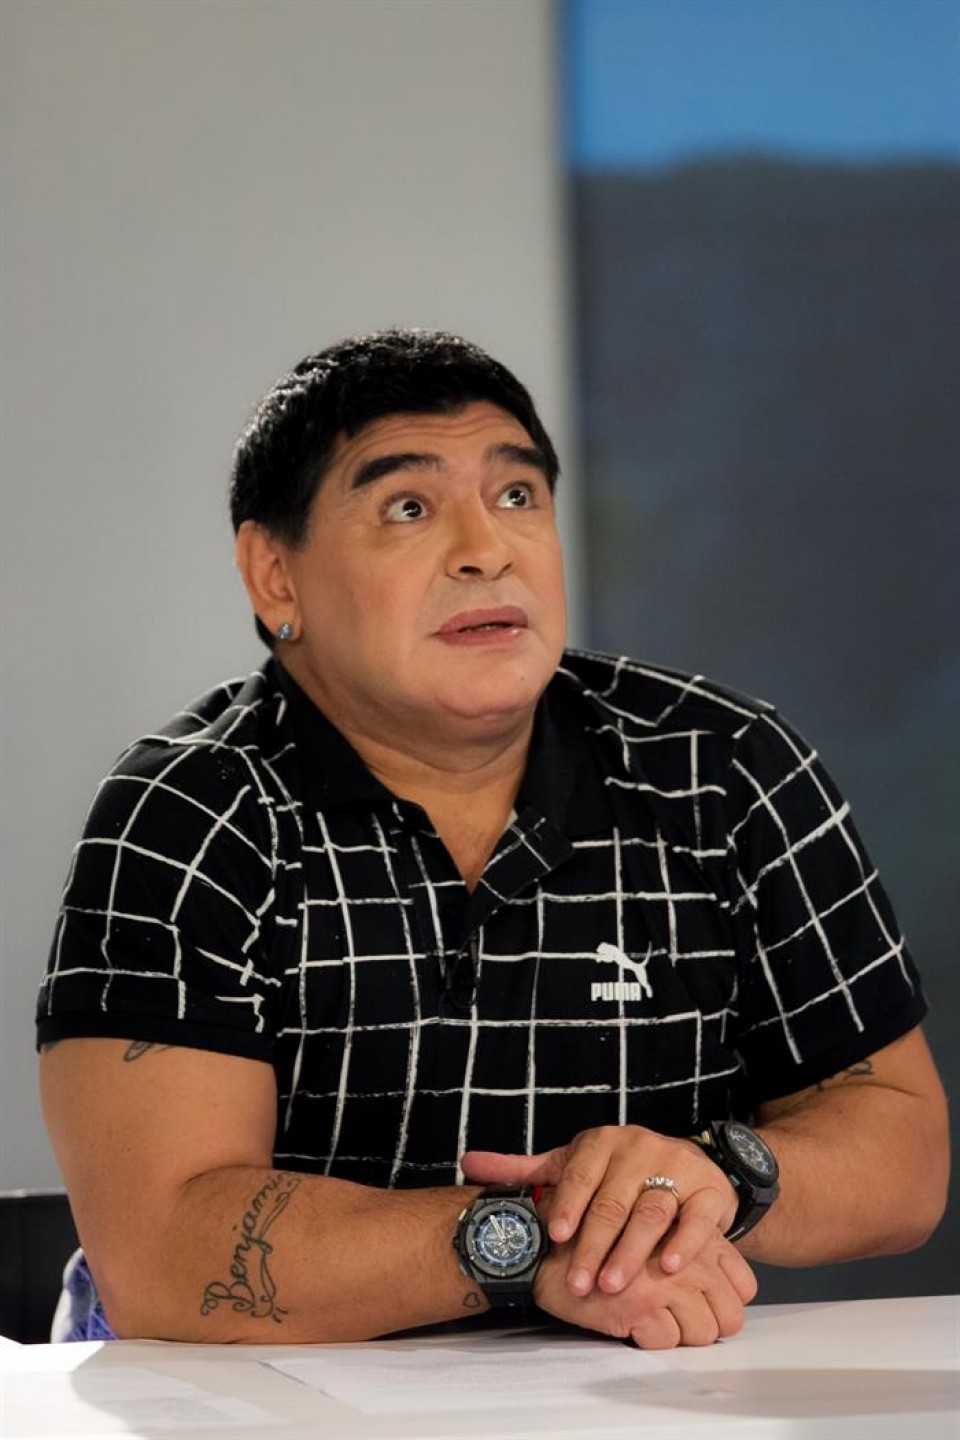 Diego Armando Maradona nueva cara aurpegia EFE